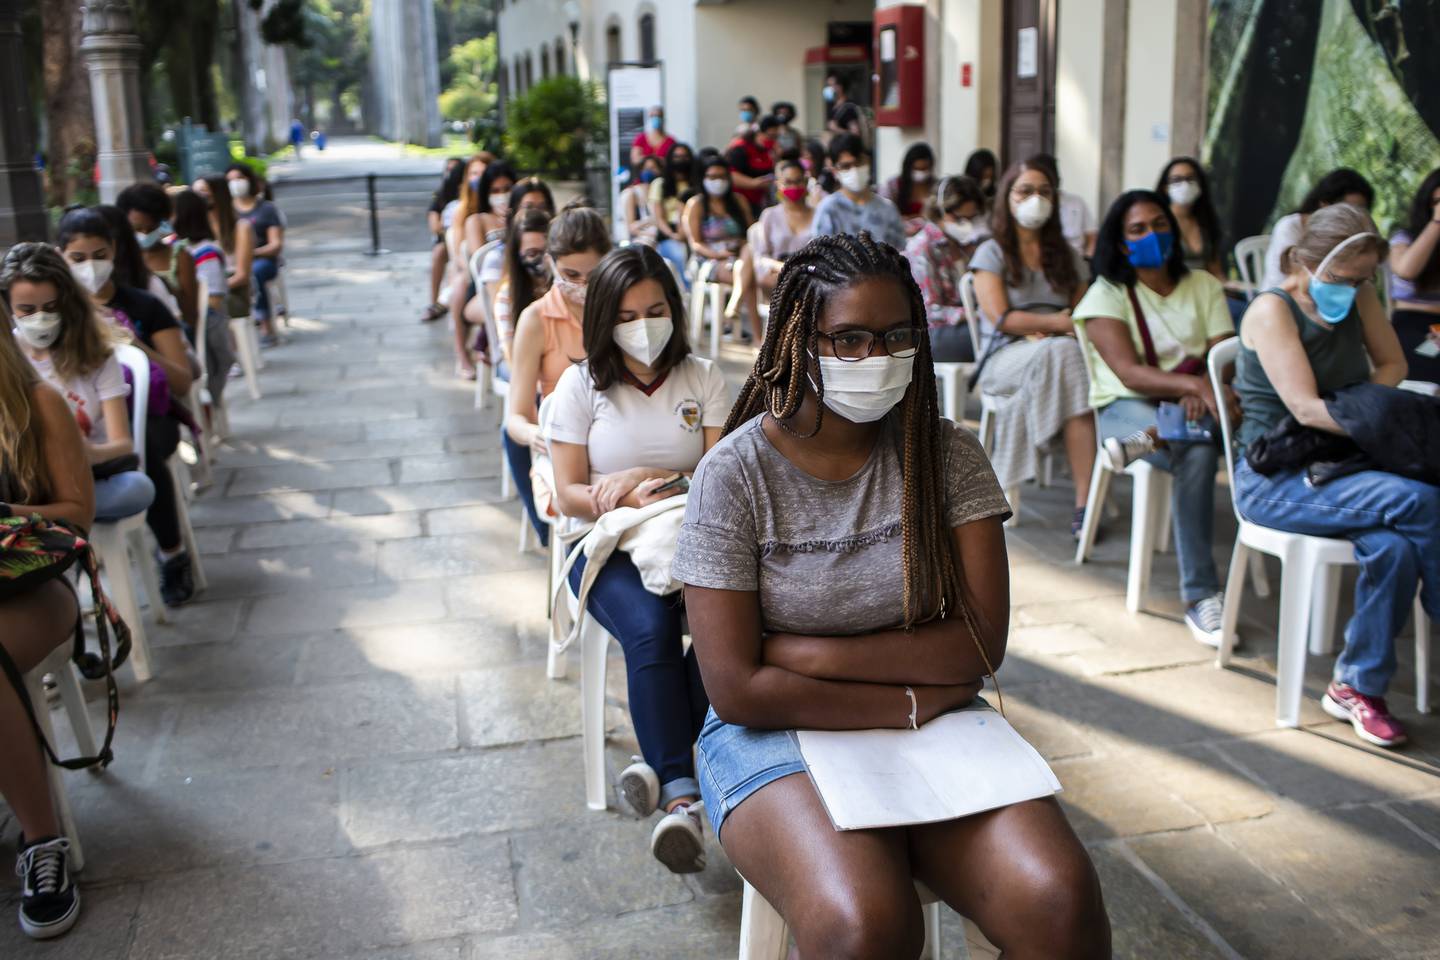 Sør-Amerika ble svært hardt rammet av pandemien, og fikk mange dødsfall i starten. Siden økte vaksineringsgraden betraktelig. Her sitter unge jenter i vaksinekø i Rio i Brasil i august 2021.